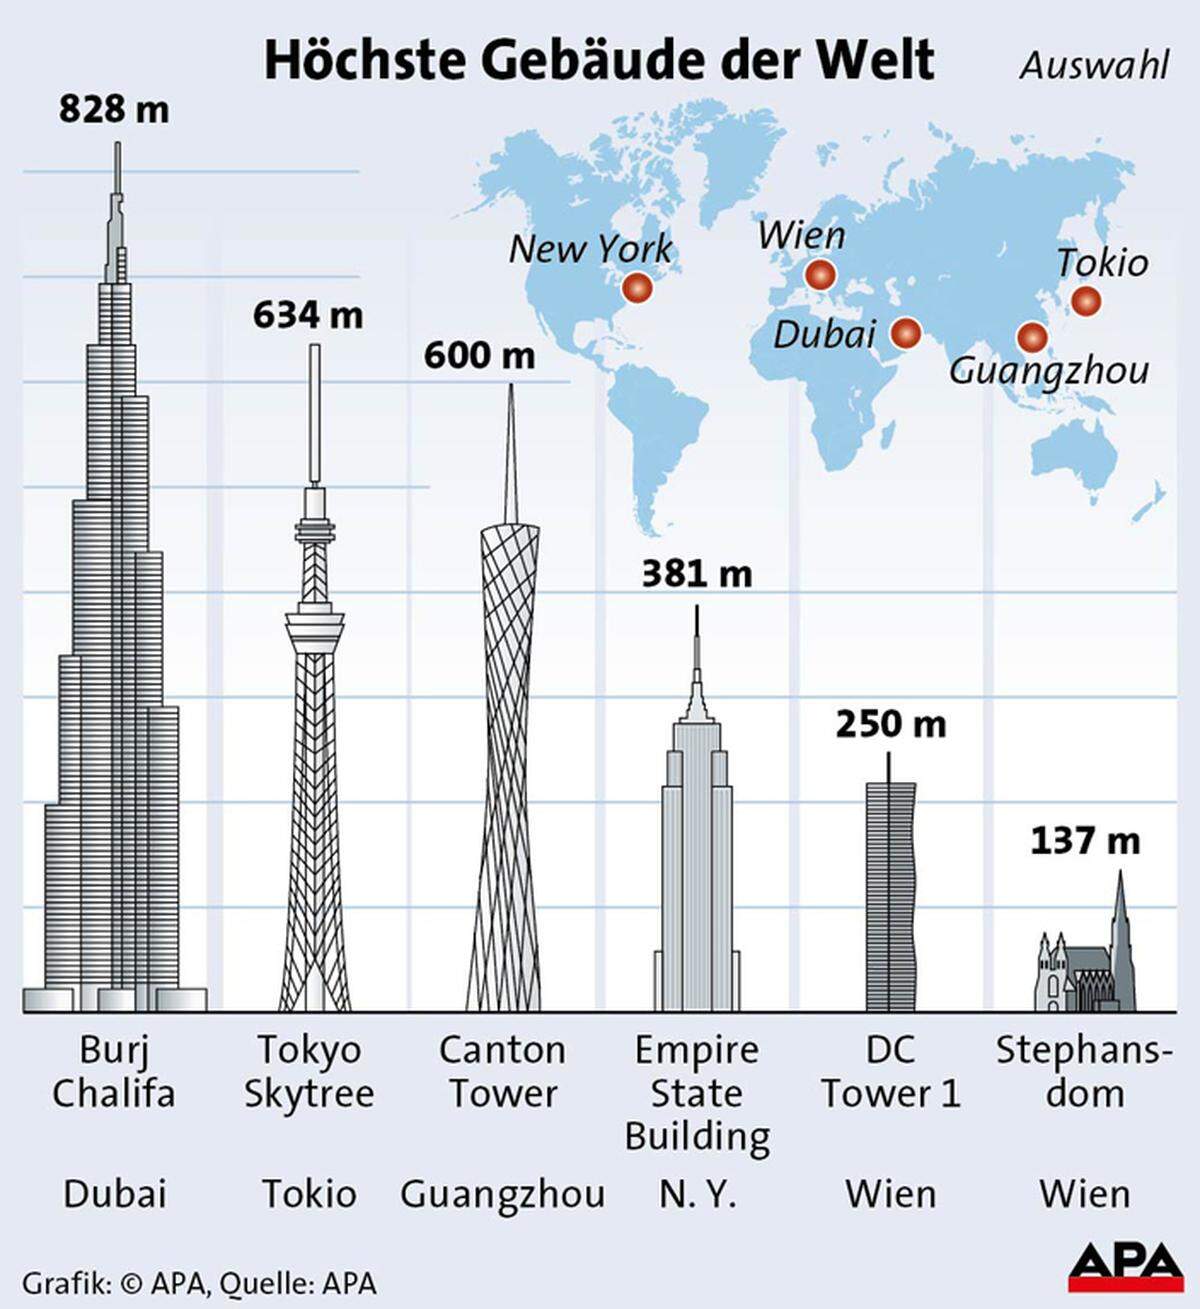 Das höchste Bauwerk des Landes ist der Turm trotz seines schwindelerregenden Ausmaßes nicht. Der Donauturm misst 252 Meter, also zwei Meter mehr als sein Nachbar auf der Donauplatte. Zur Weltelite fehlt überhaupt noch einiges: Das höchste Haus Europas steht derzeit in Moskau. Und selbst dieser ist im Vergleich zum welthöchsten Haus, dem Burj Khalifa (Dubai) mit seinen 828 Metern, vergleichsweise niedrig.